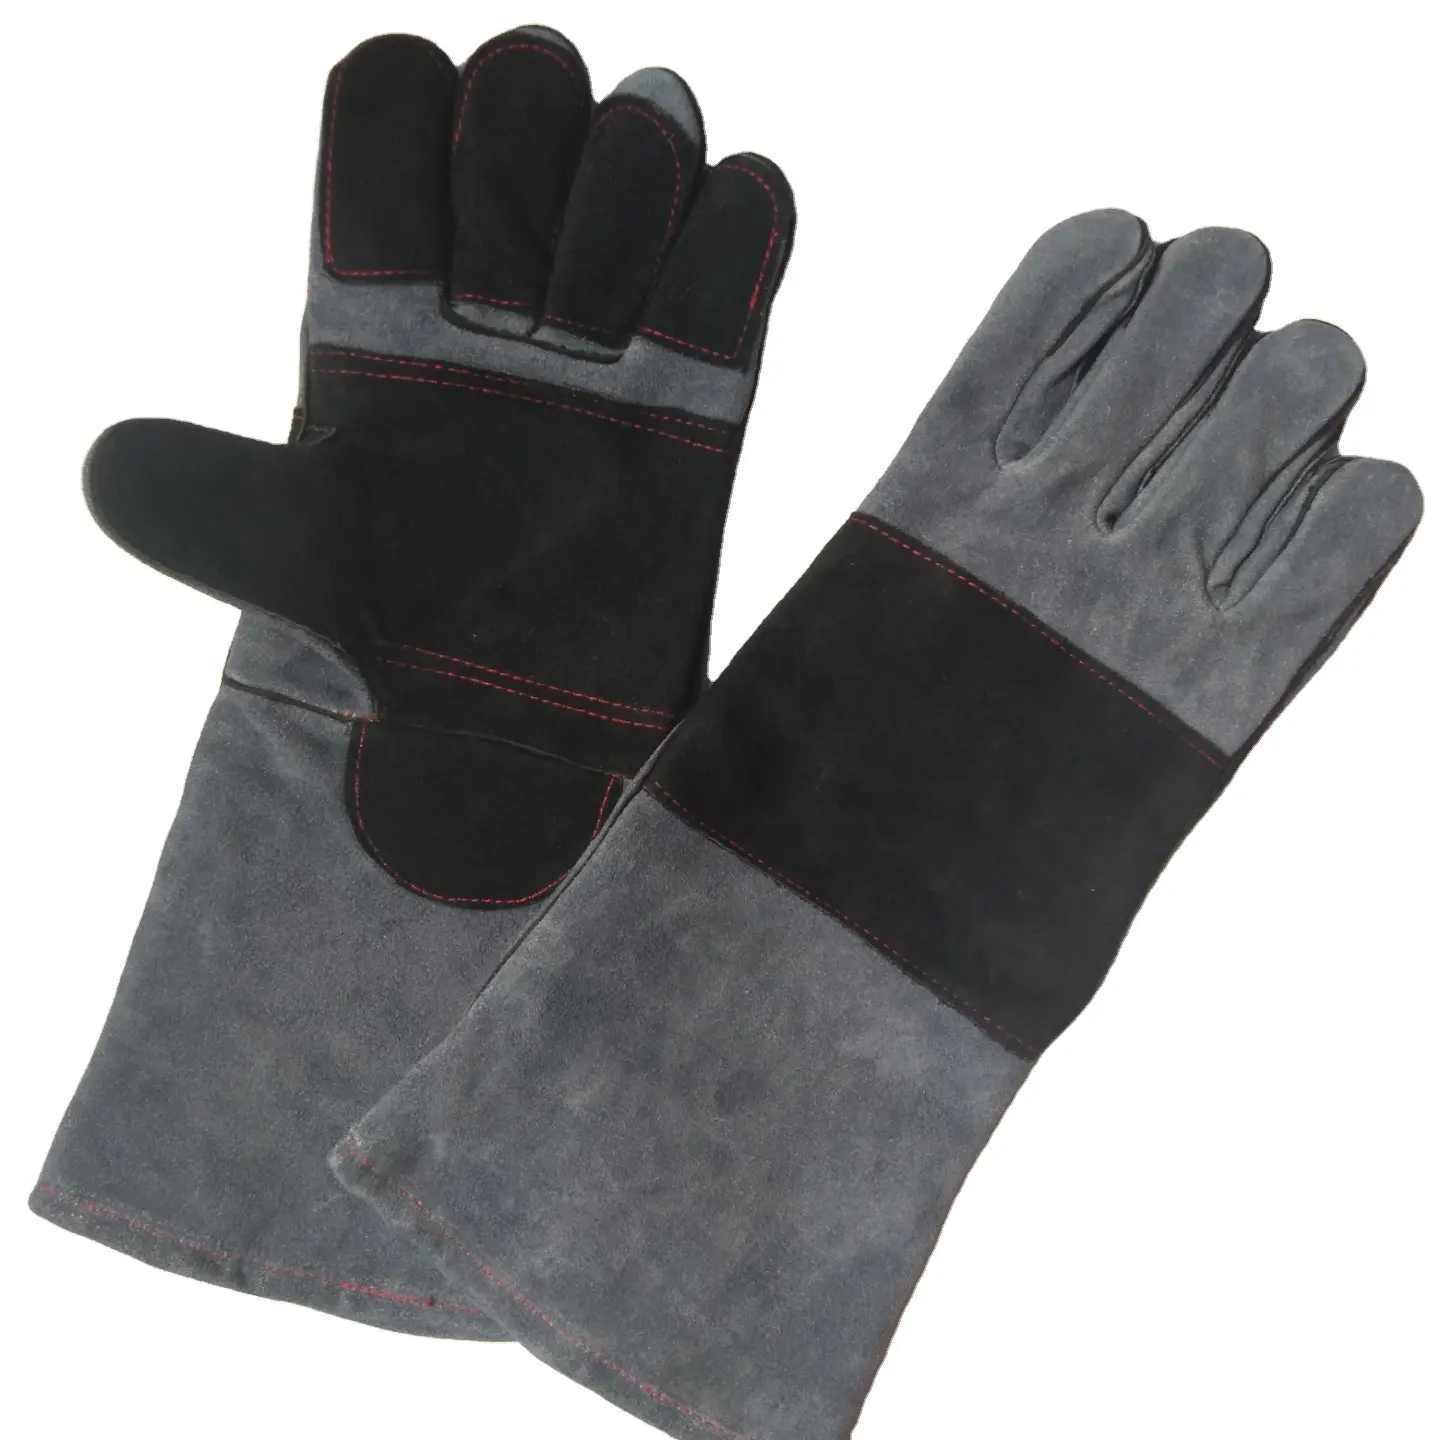 Haute qualité 16 pouces tig soudage gants en cuir noir et gris long coton doublé pour barbecue